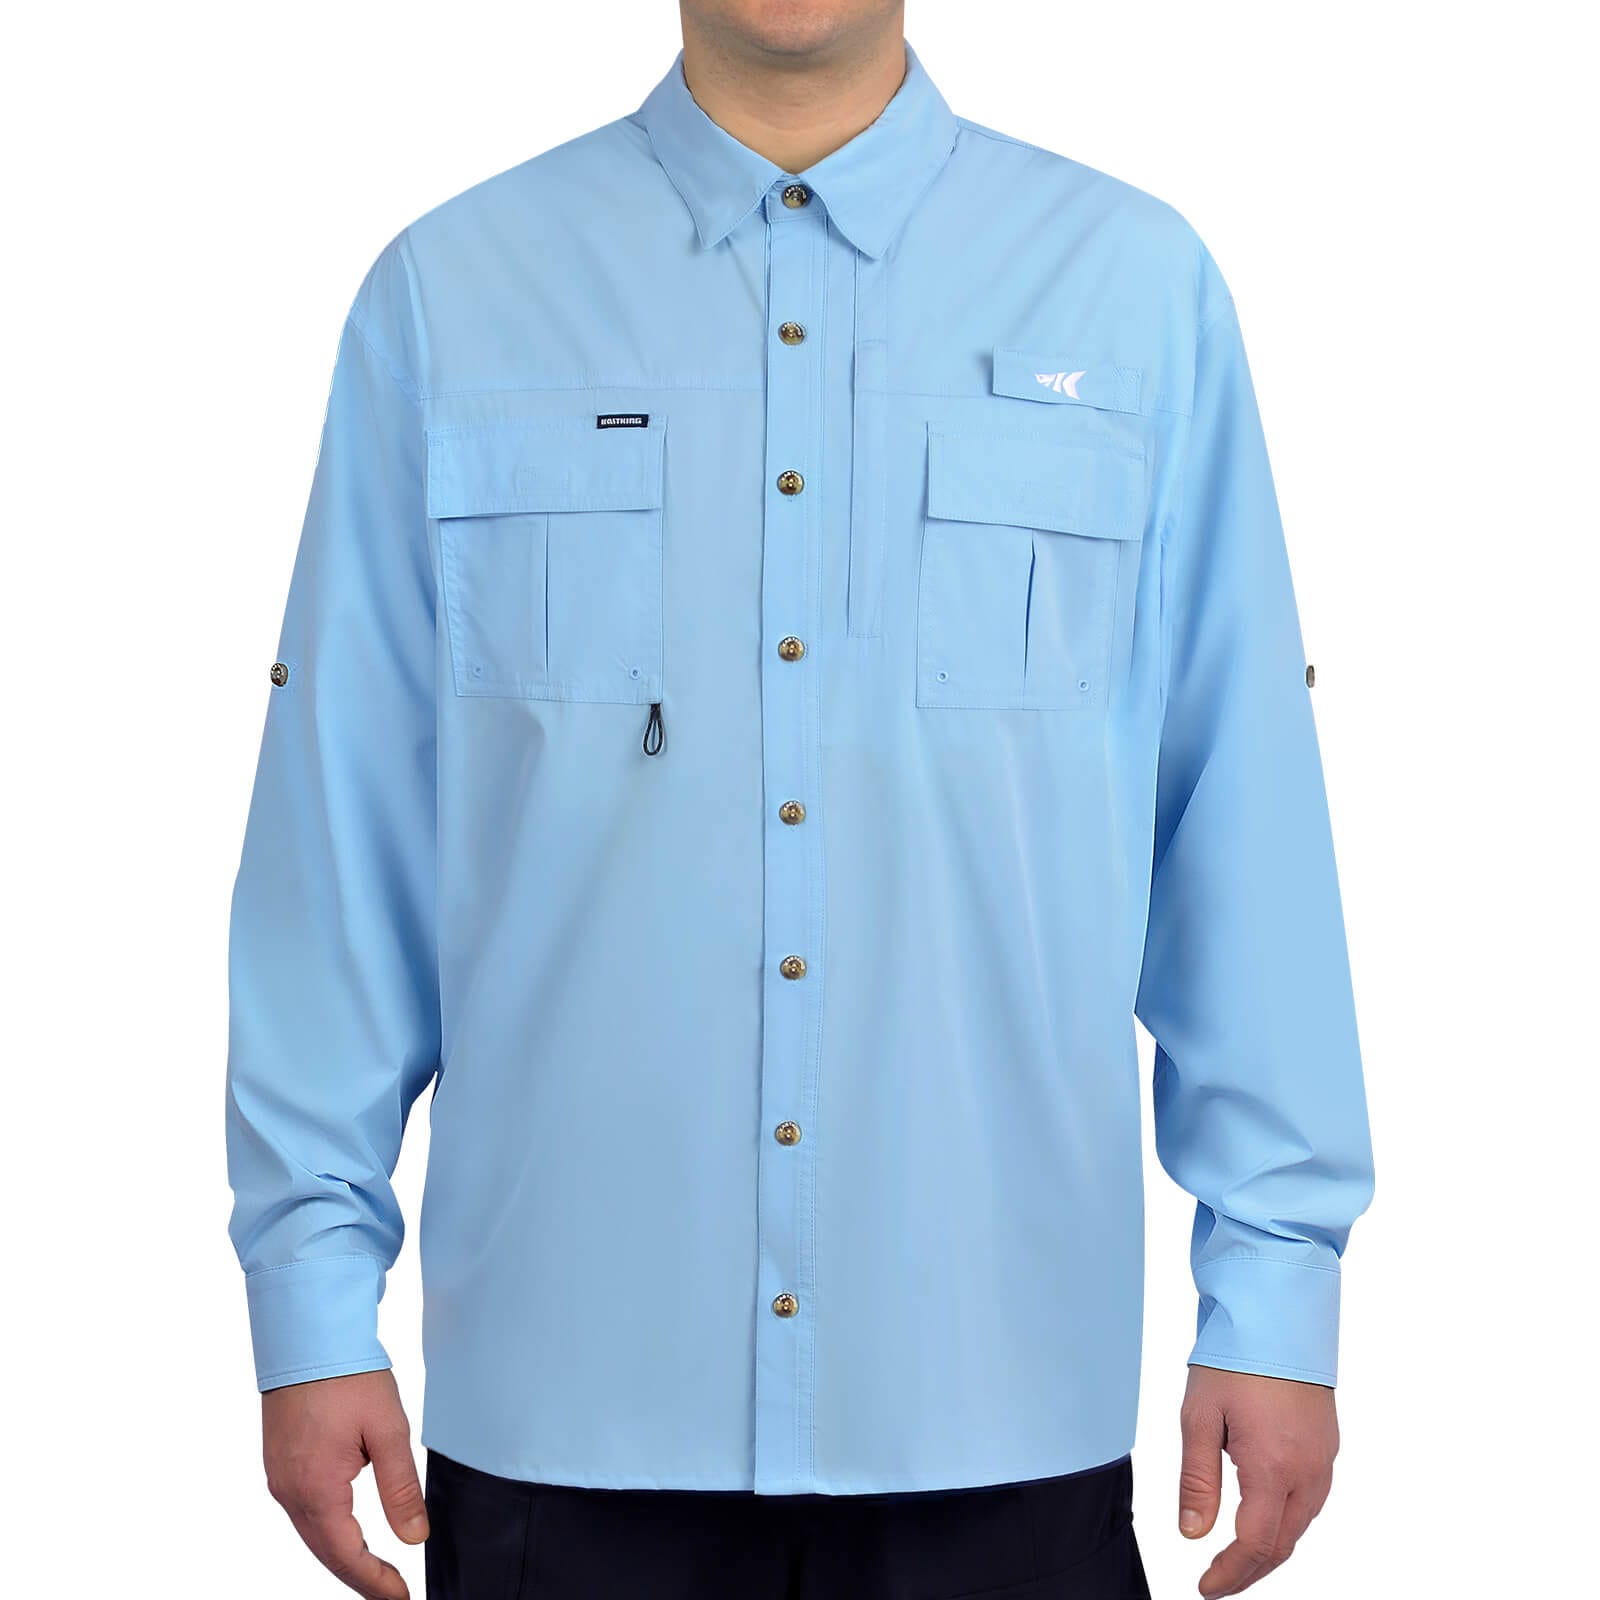 KastKing ReKon Men's Fishing Shirts, UPF 50+ Quick-Dry Short